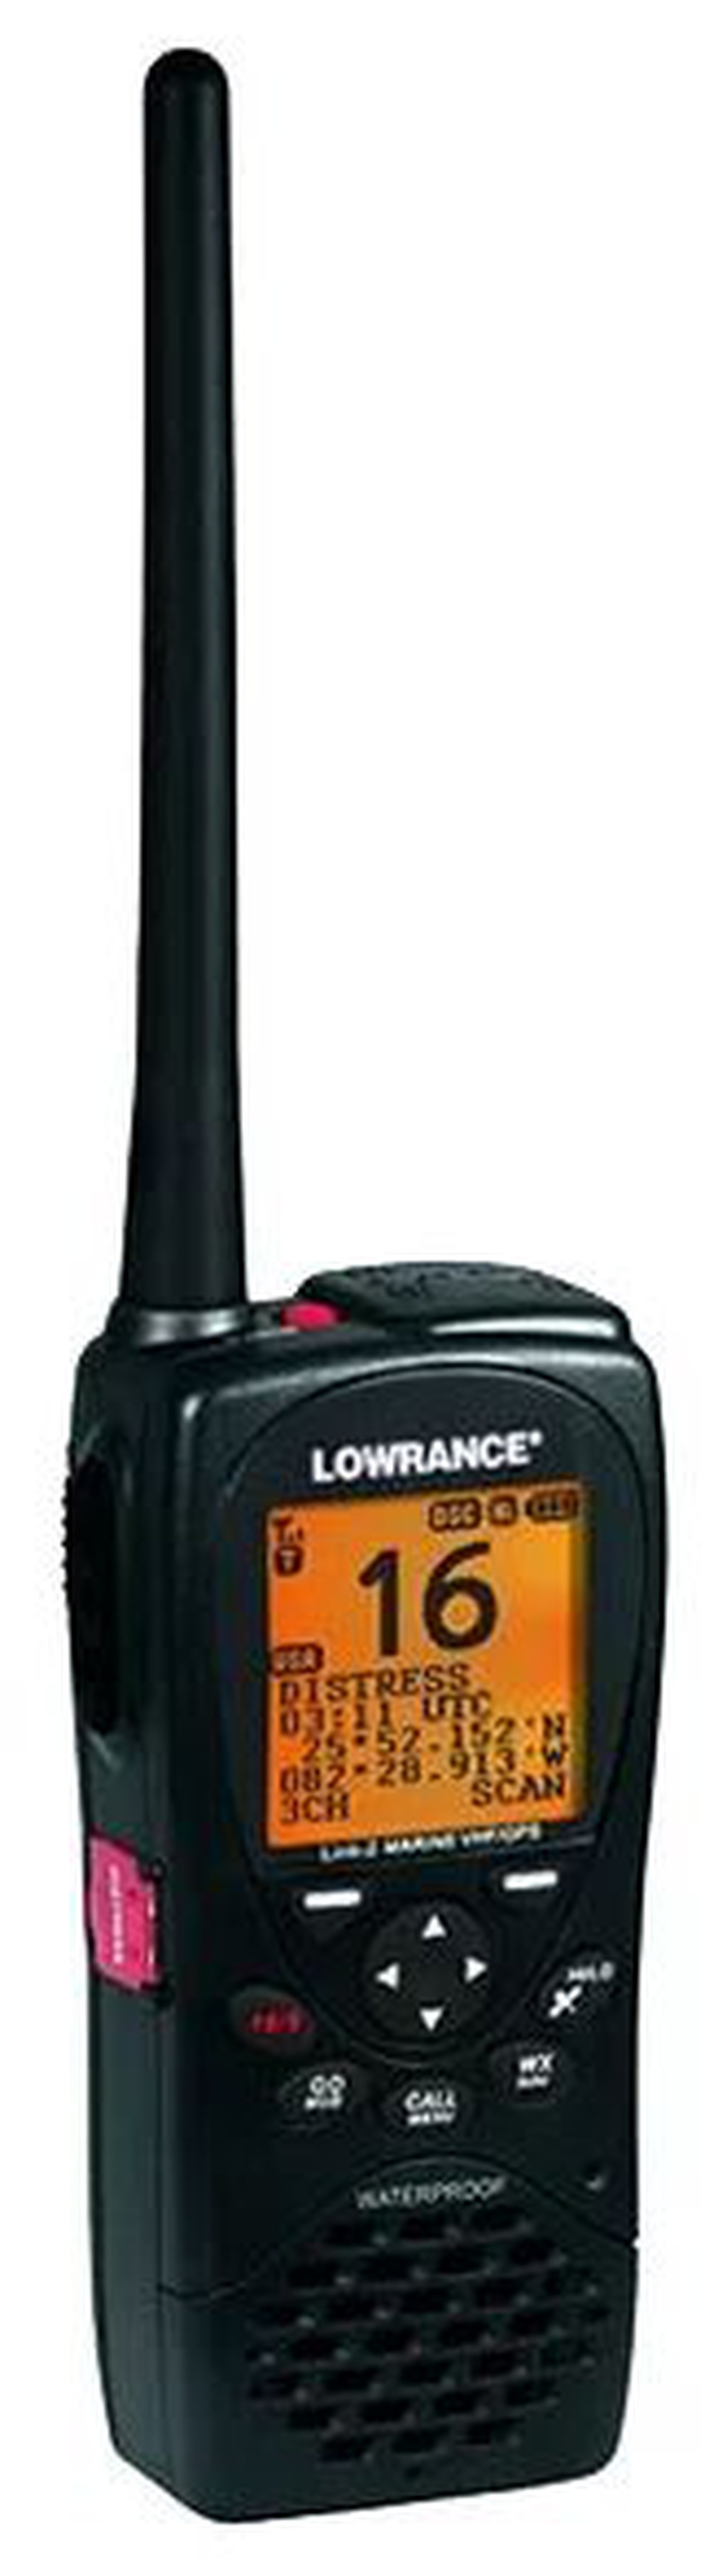 Радиостанция Lowrance VHF HH RADIO, LINK-2 DSC, EU/UK, ручная (000-10781-001) фото